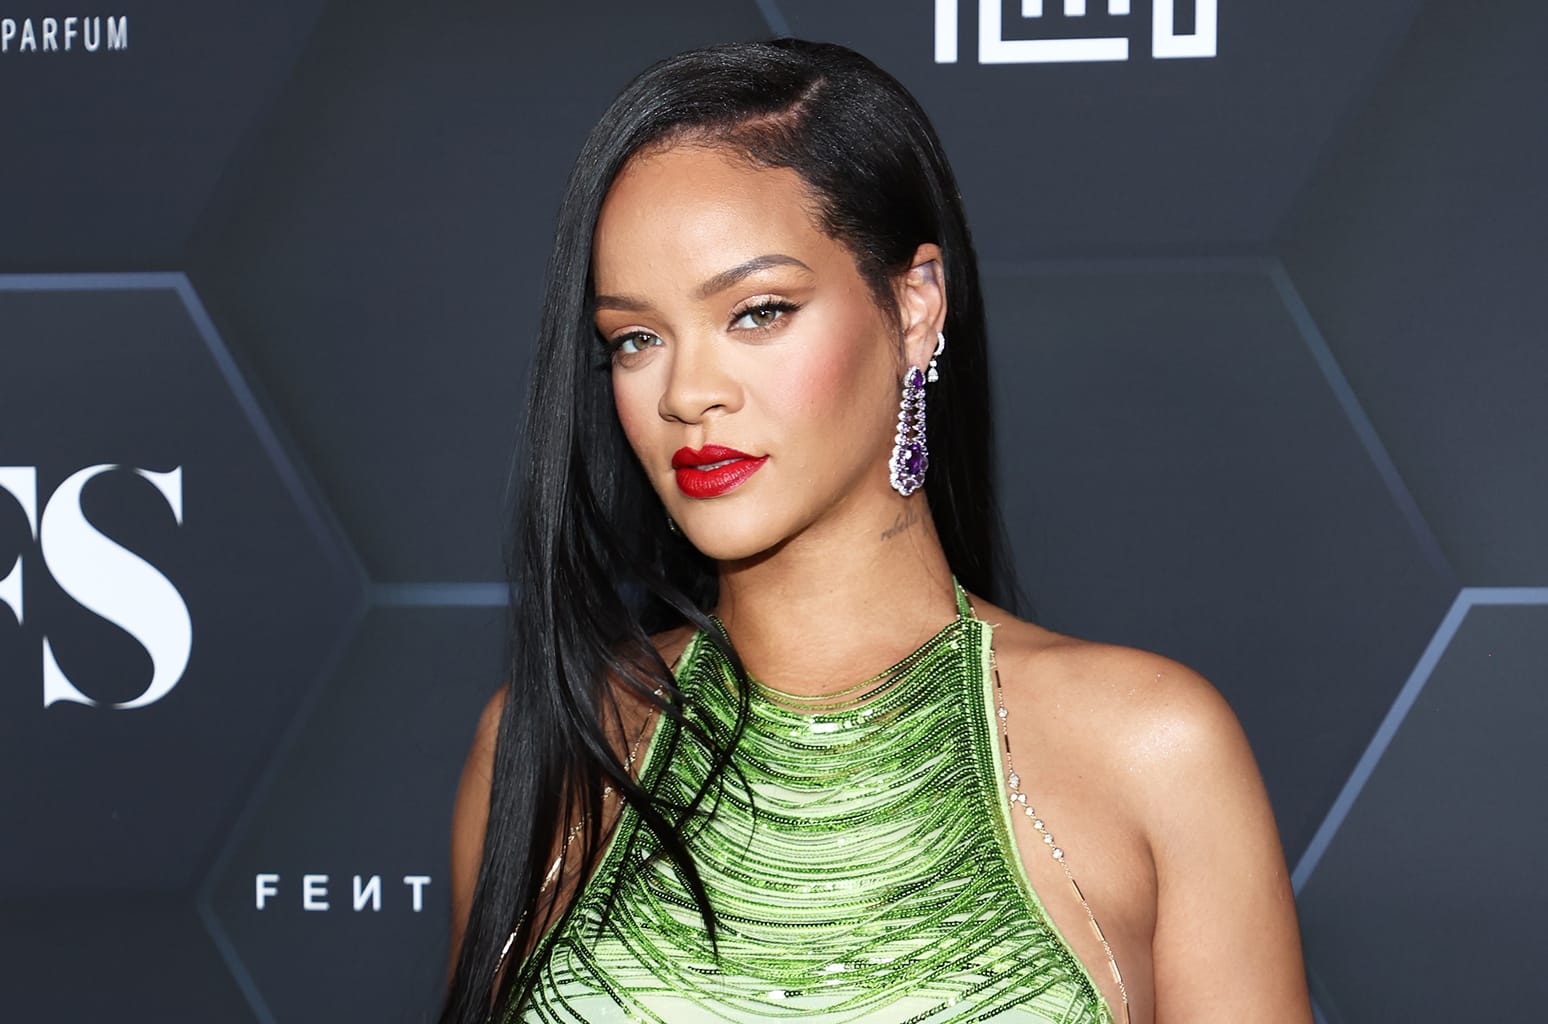 Rihanna Jadi Penyanyi Terkaya di Dunia, Harta Rp 24,3 Triliun Bukan dari Bermusik